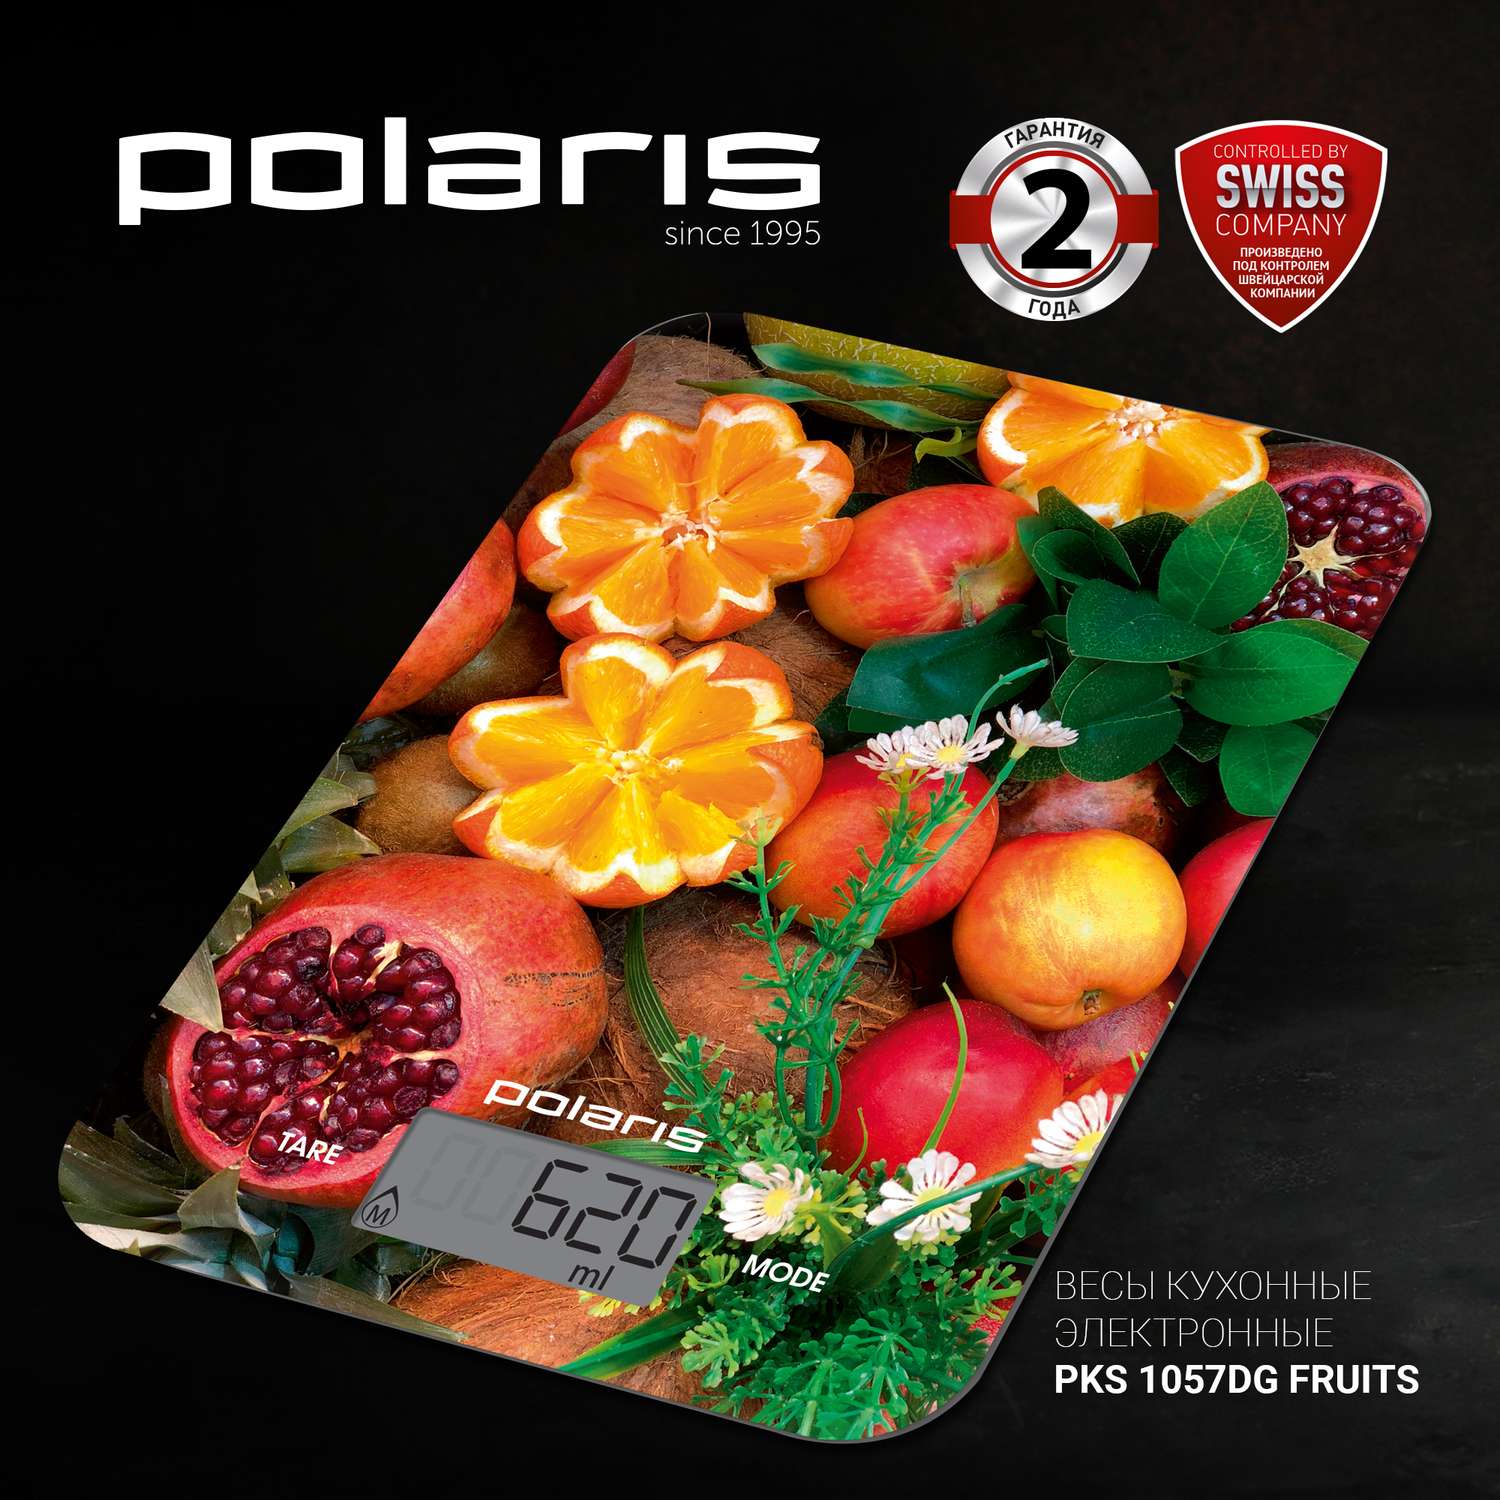 Весы кухонные Polaris PKS 1057DG Fruits - фото 2